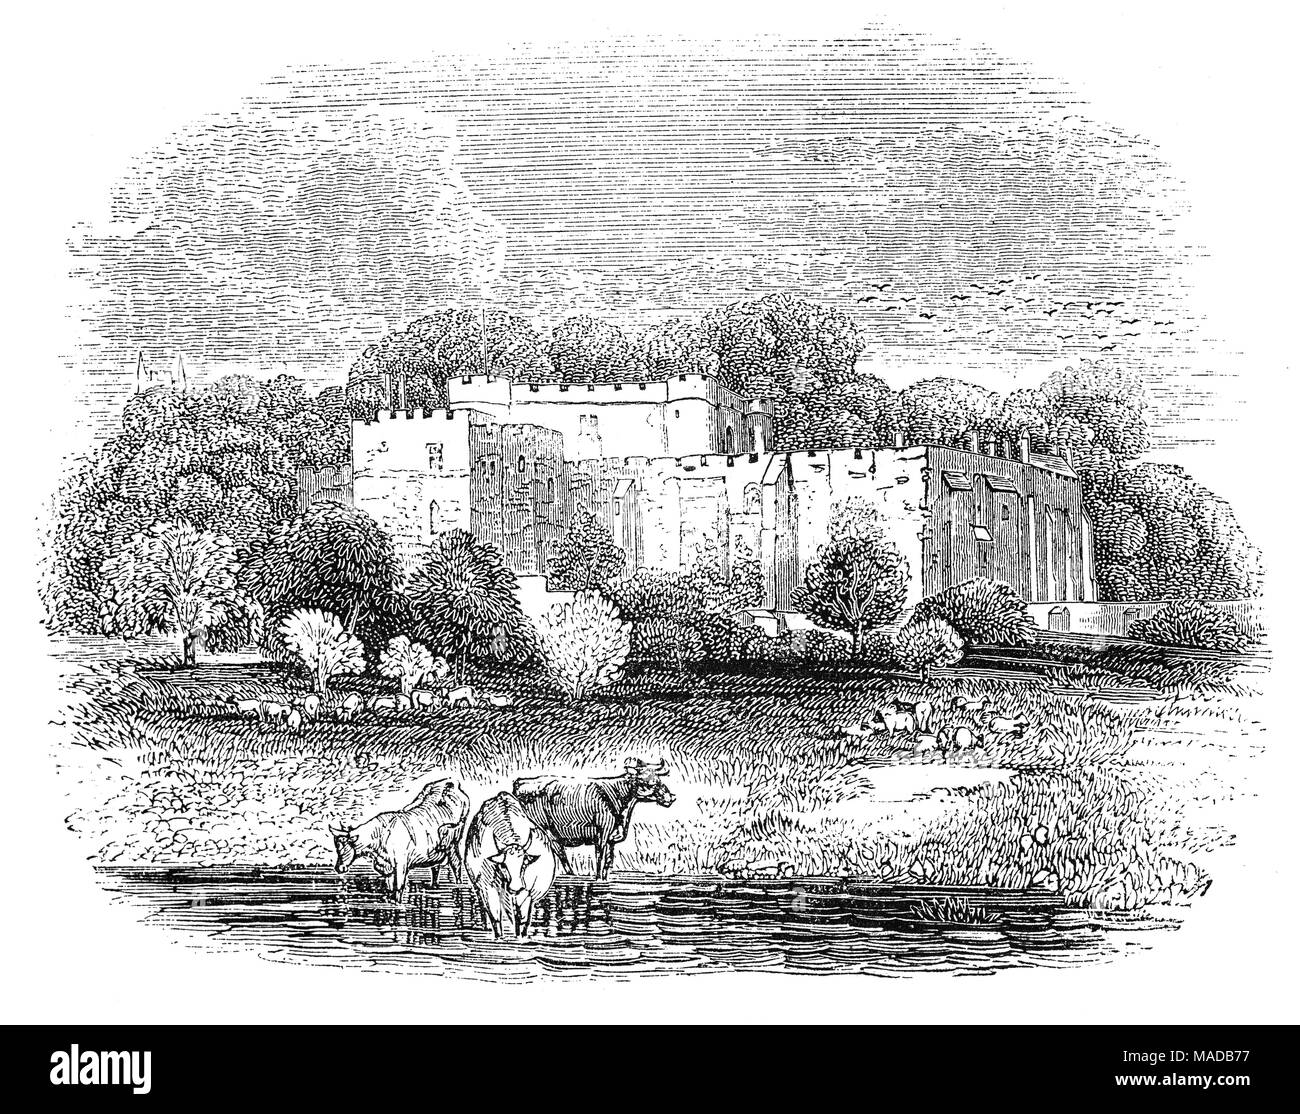 Château de Berkeley dans la ville de Berkeley, Gloucestershire, Angleterre date des XIIe et XIVe siècles. On pense que c'est le théâtre du meurtre du roi Edward II en 1327 après qu'il ait été destitué par sa femme, la reine Isabella, et son allié Roger Mortimer, et placé sous la garde conjointe de Thomas de Berkeley au château de Berkeley. Au cours de ses cinq mois d'emprisonnement, une bande de partisans d'Edward a attaqué, est entrée dans le château et l'a sauvé, seulement pour qu'il soit repris peu après et par tous les comptes a subi une mort horrible le 21 septembre 1327. Banque D'Images